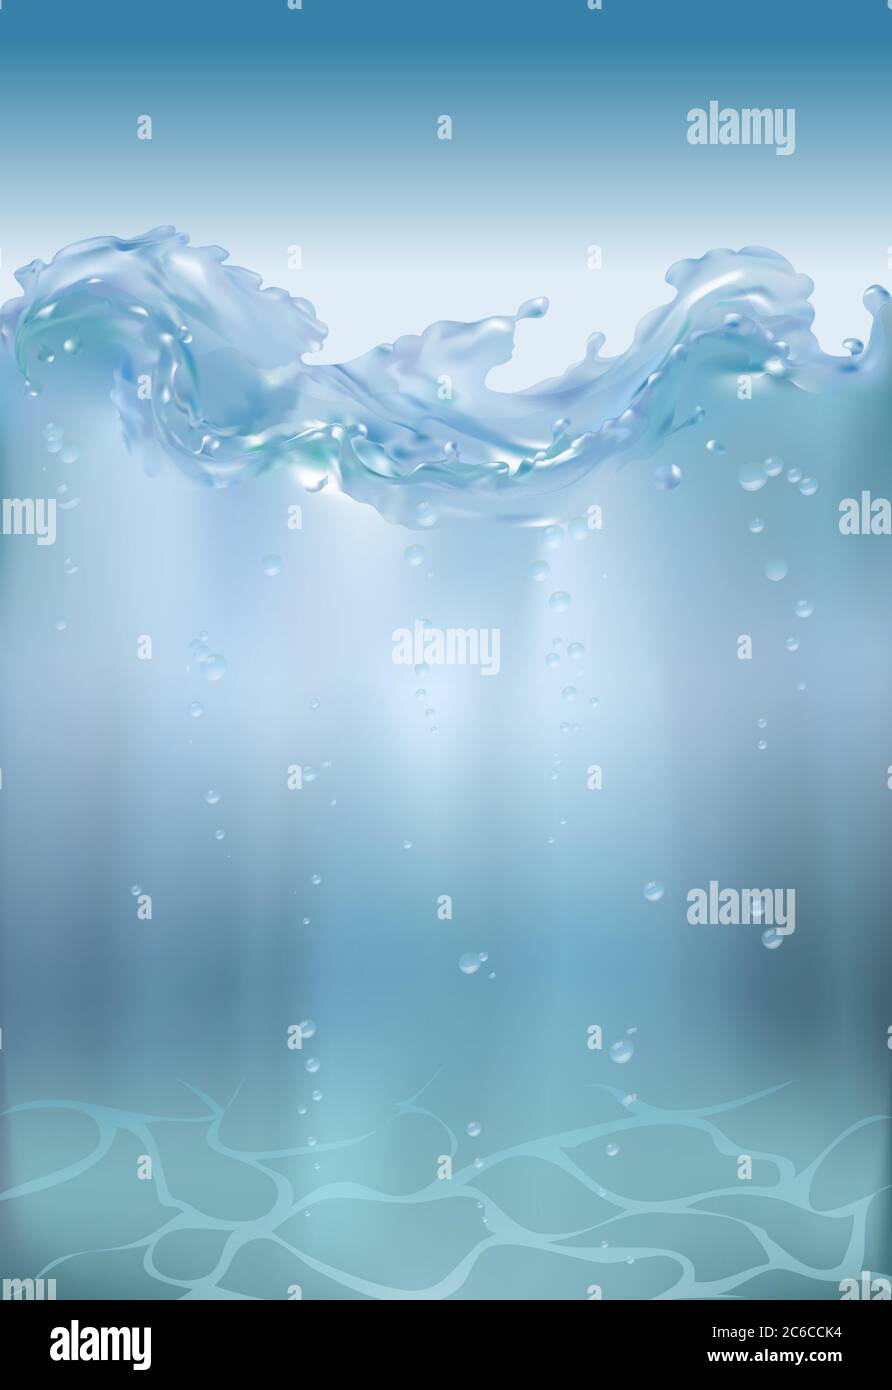 Reines Wasser mit klaren Blasen unter dem Wasser 3d realistische Illustration, Unterwasserblau Ozean Hintergrund. Banner mit Horizont Wasseroberfläche. Stock Vektor